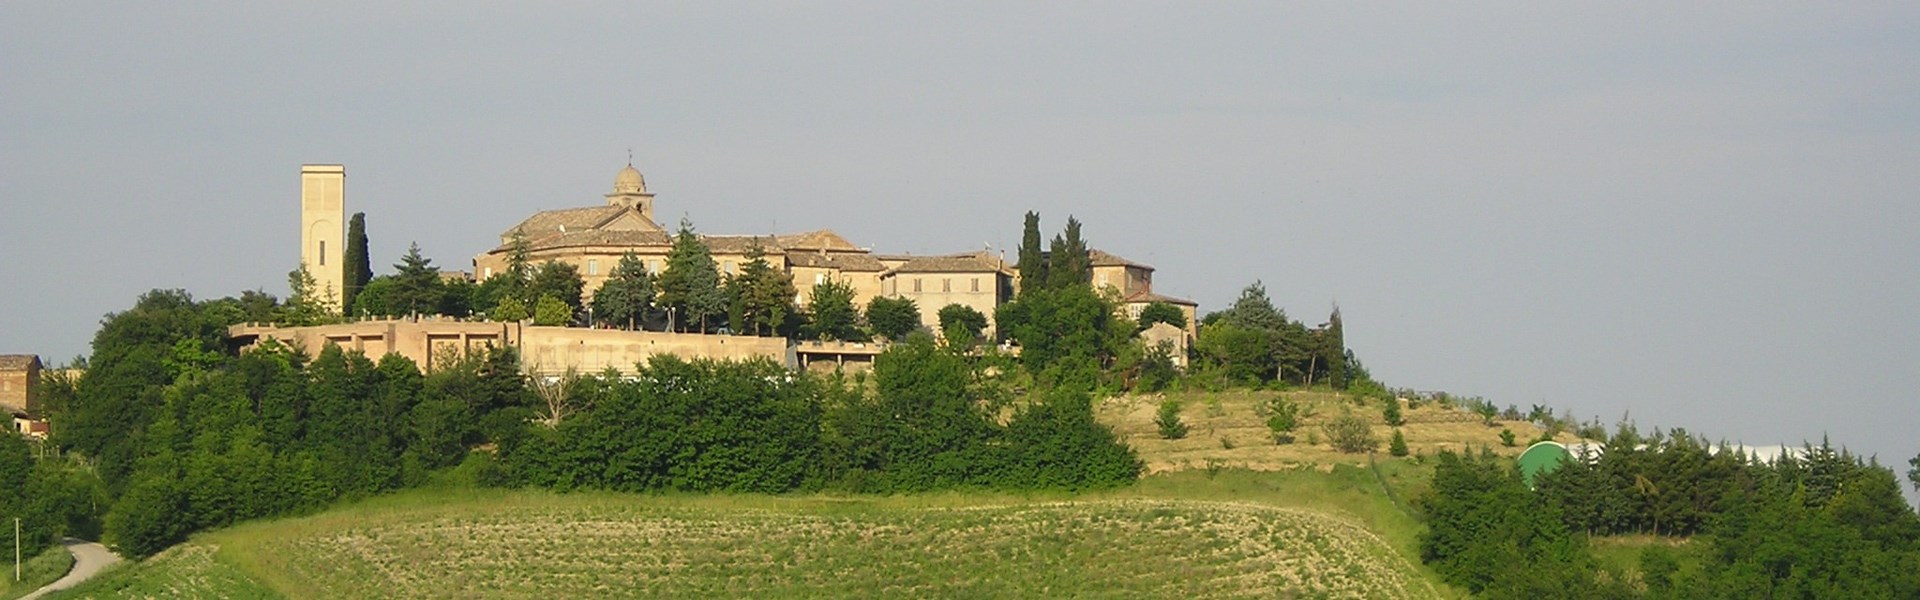 Monte Vidon Corrado - Panorama